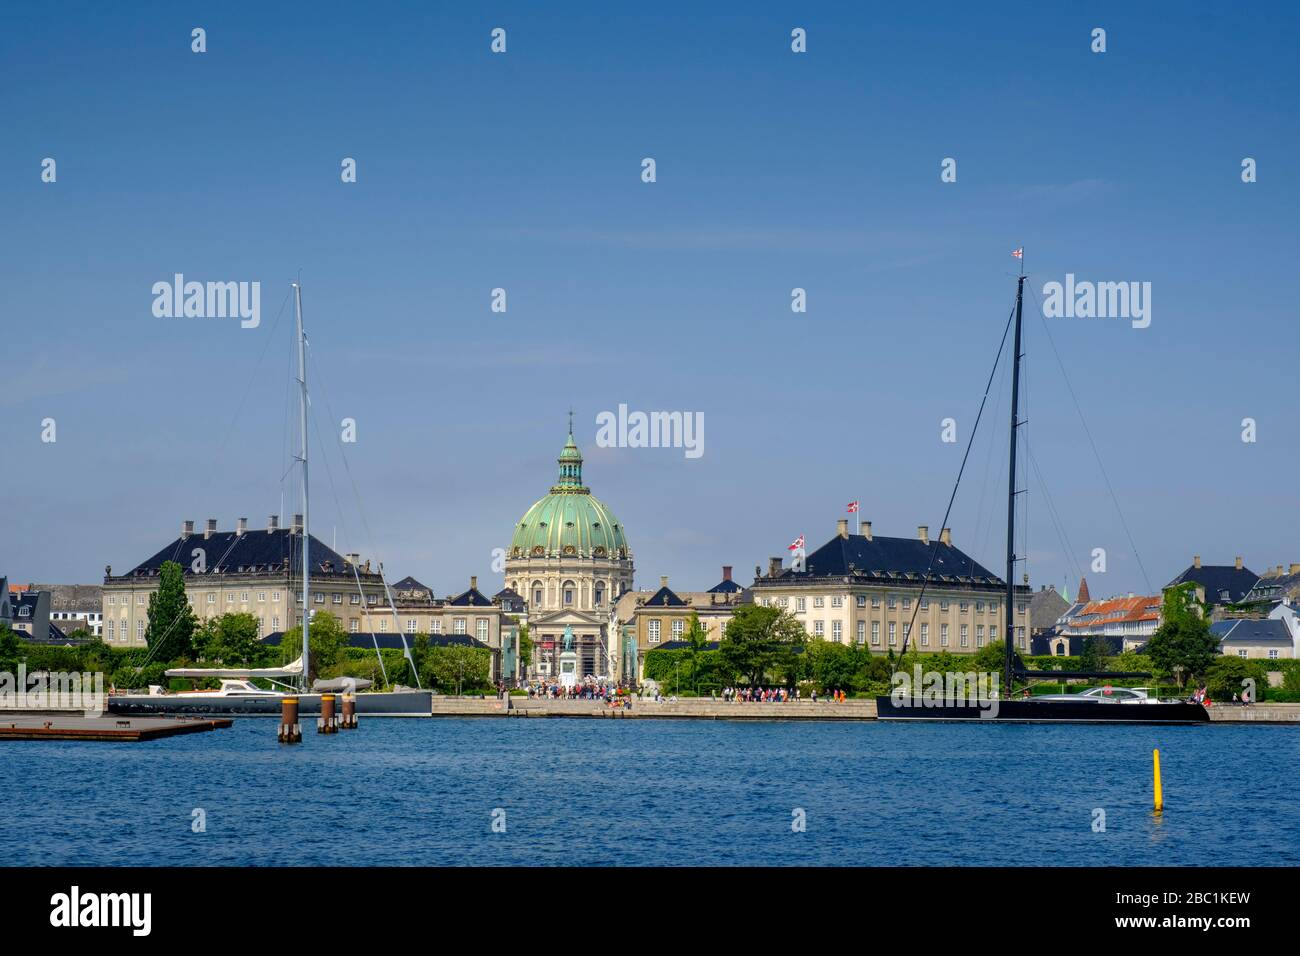 Königliches Schloss Amalienborg, Kopenhagen, Dänemark Foto Stock